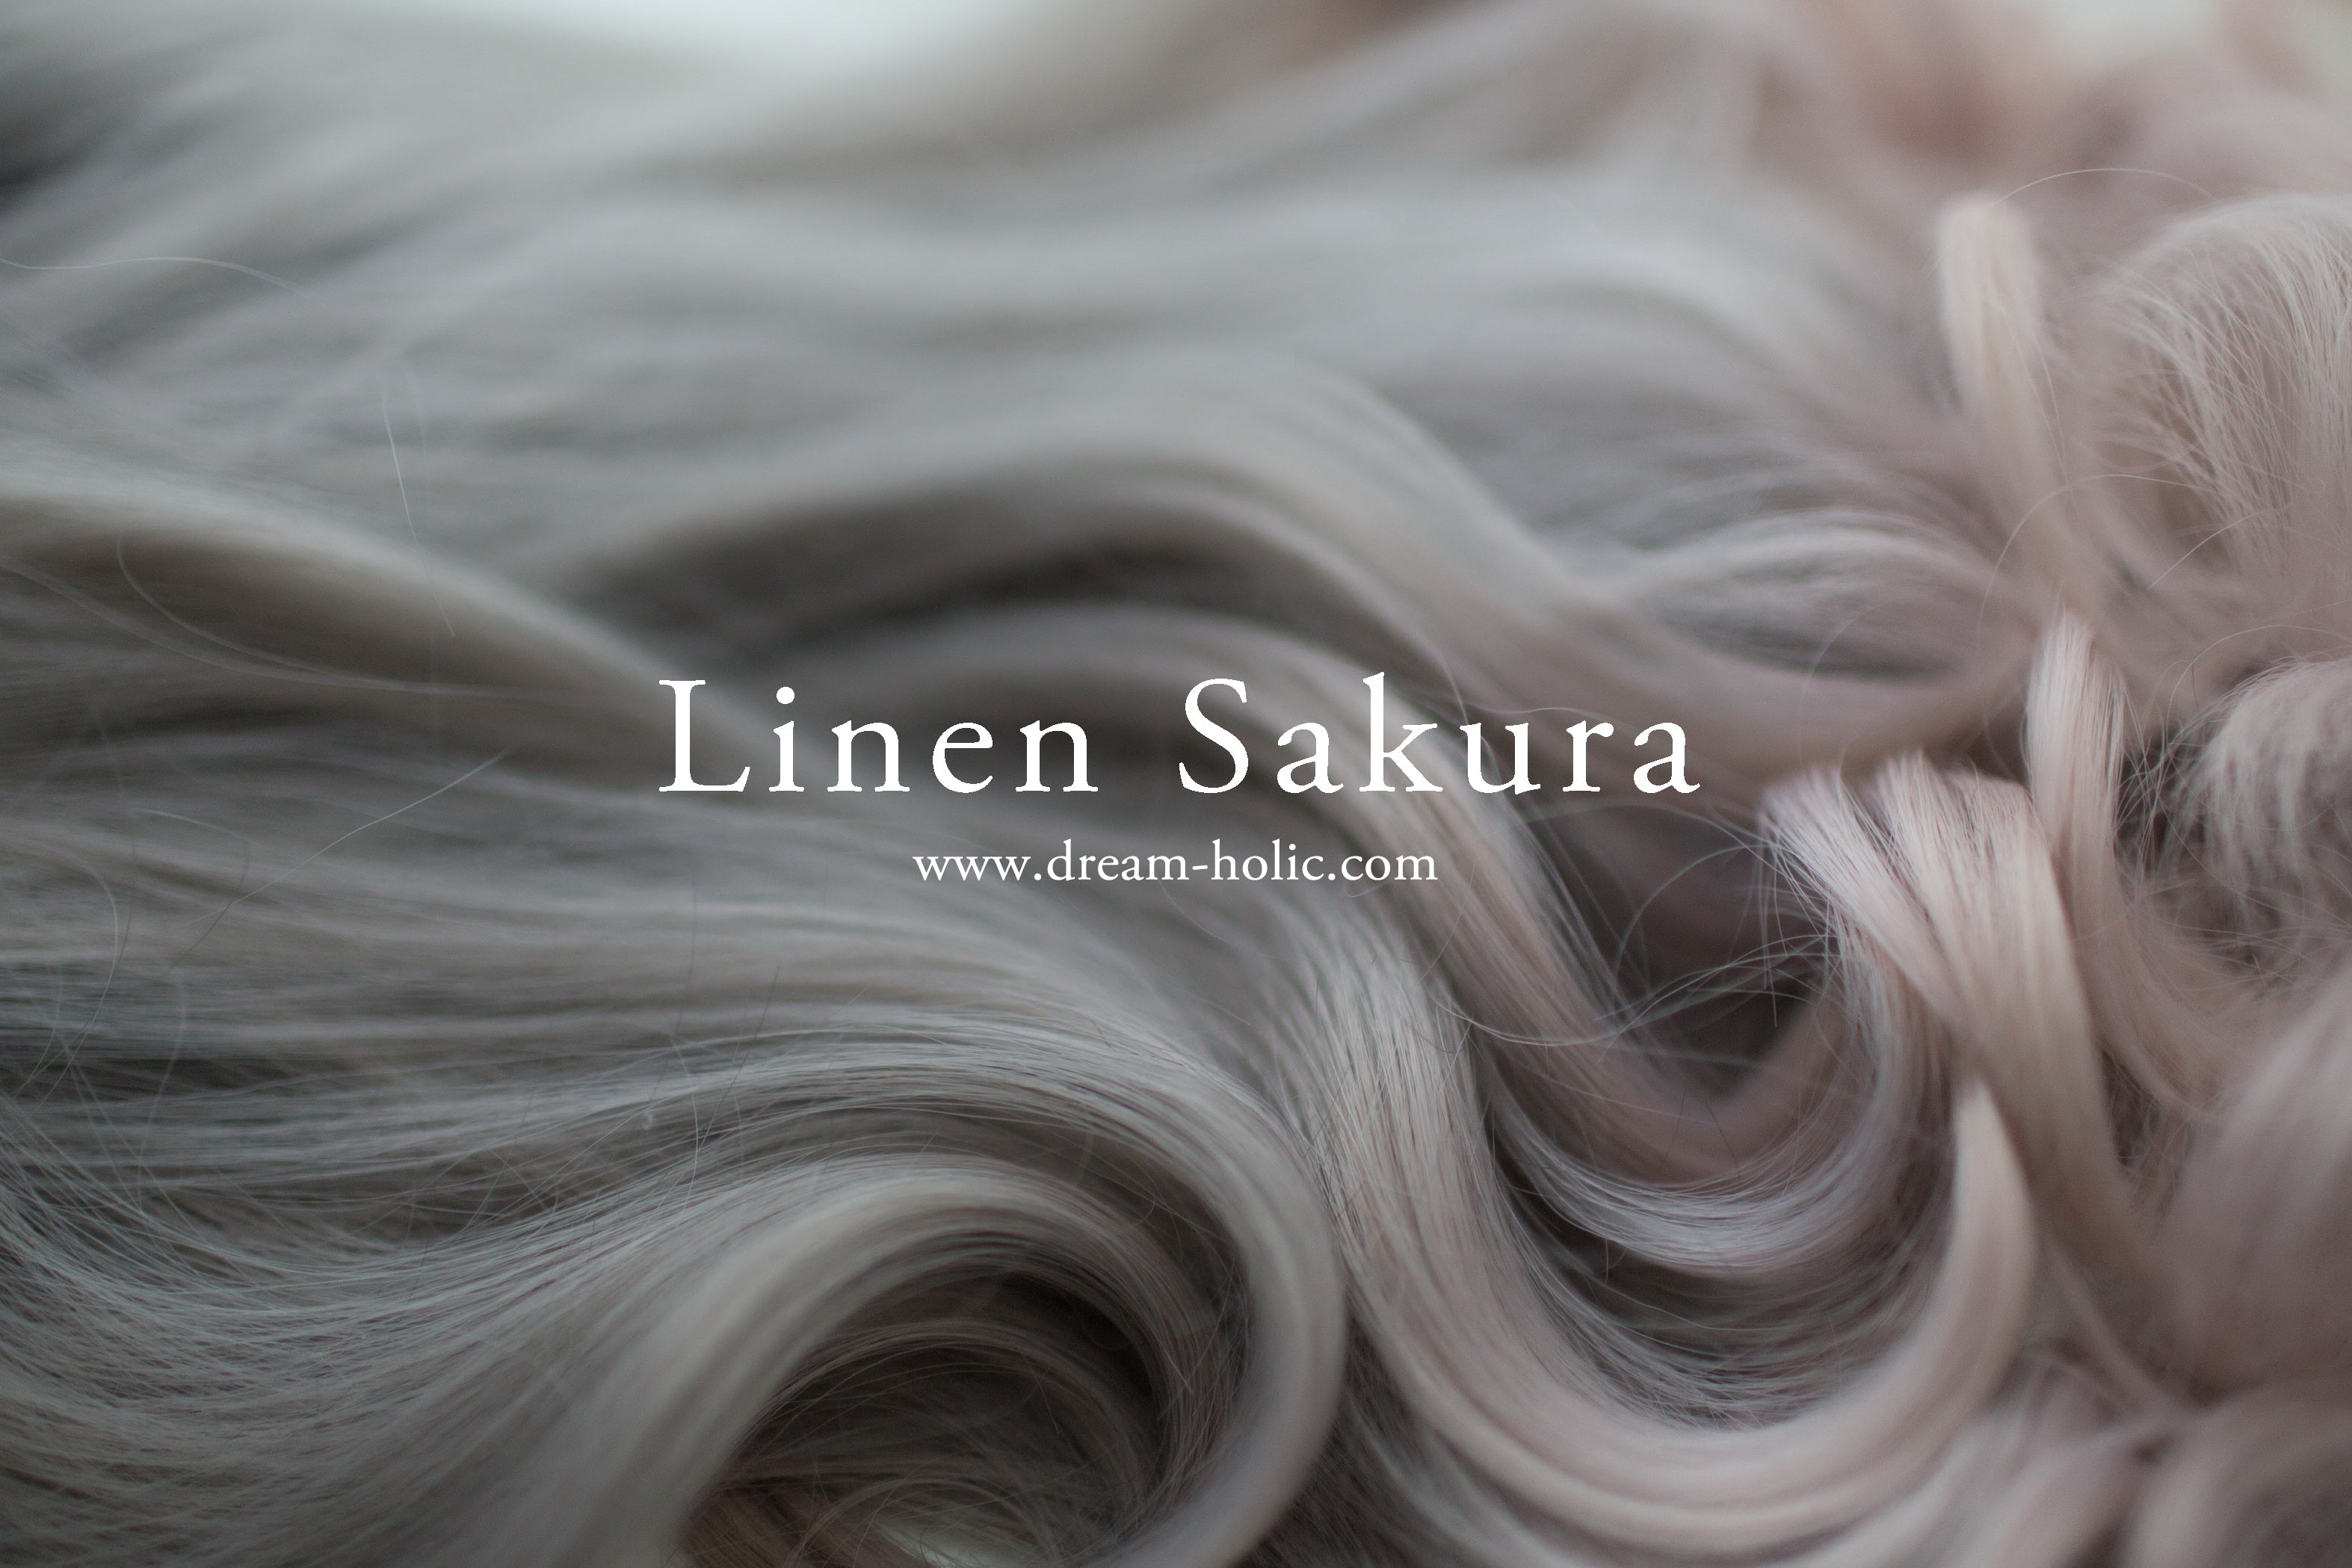 Linen Sakura